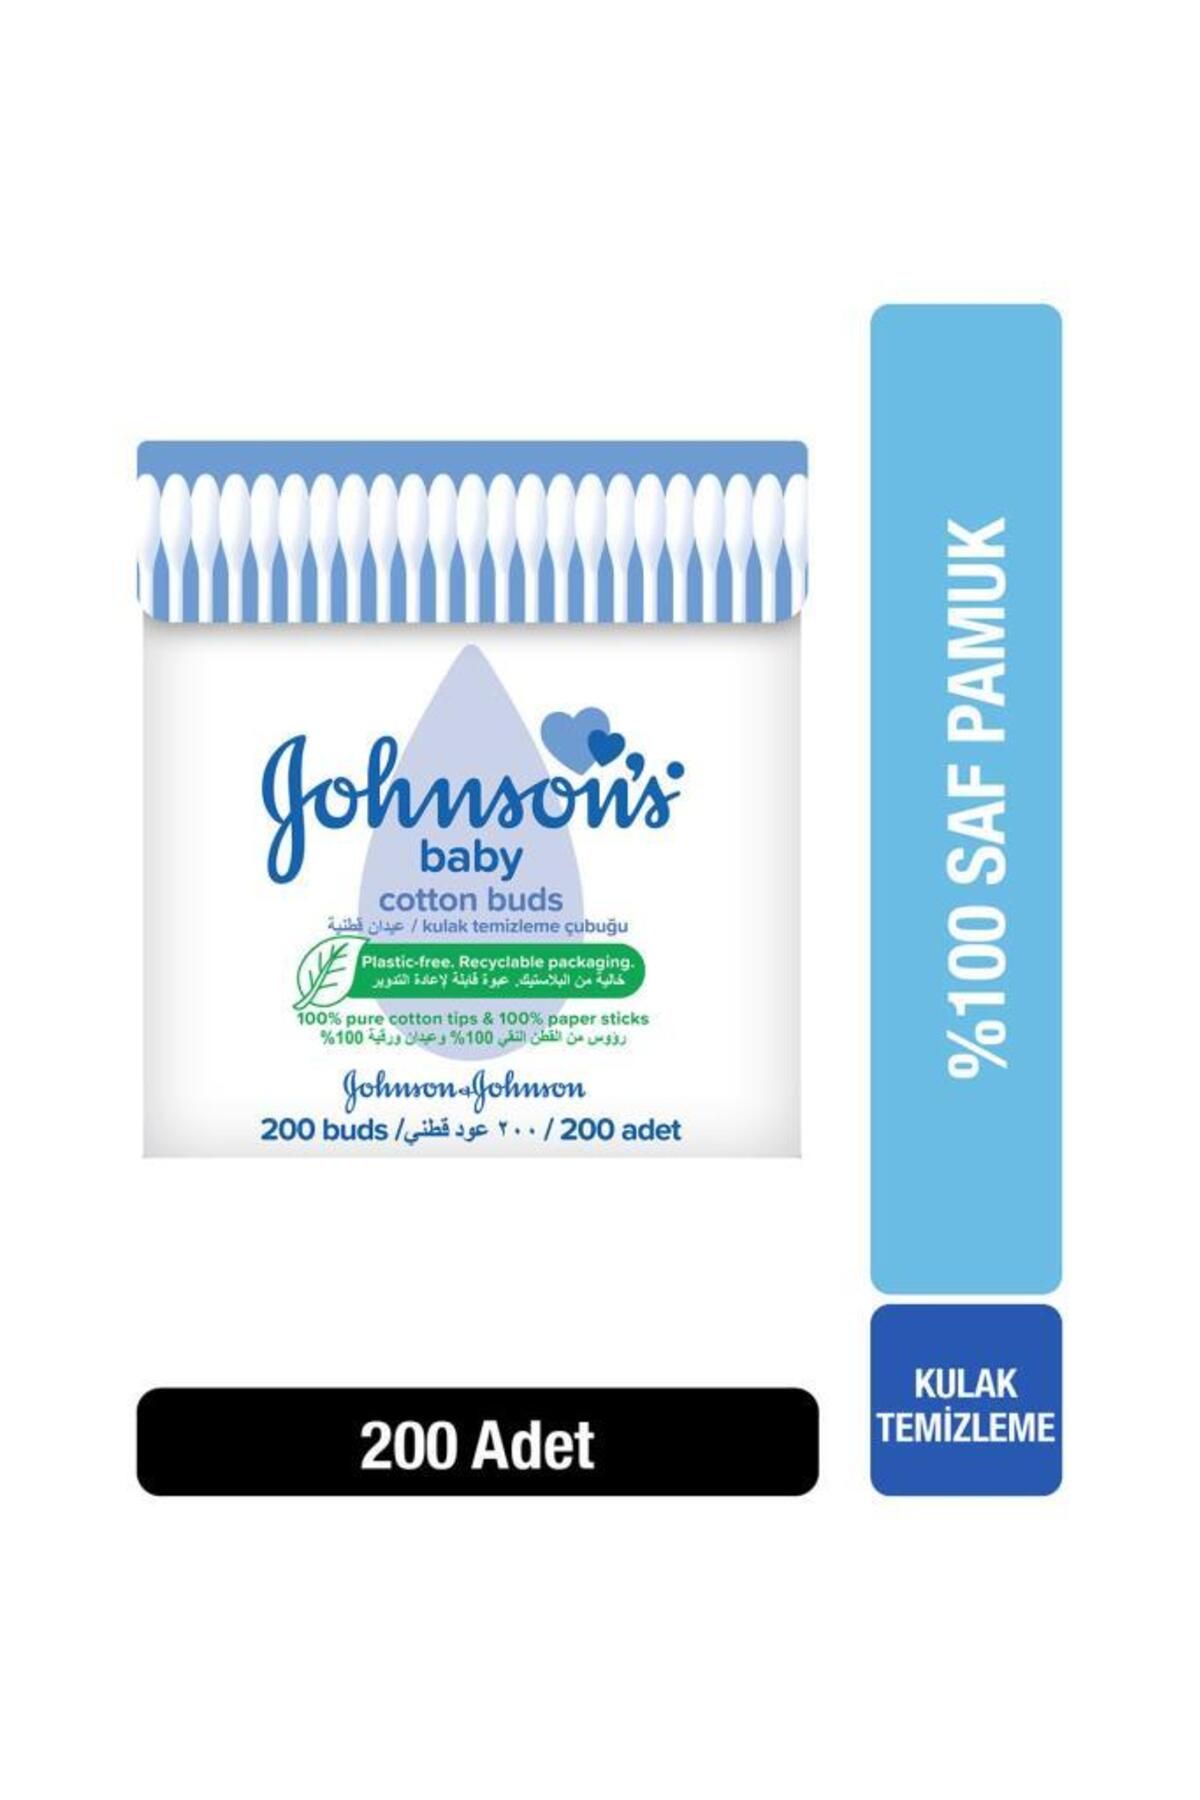 Johnson's Johnson’s Kulak Temizleme Çubuğu 200 Ad.